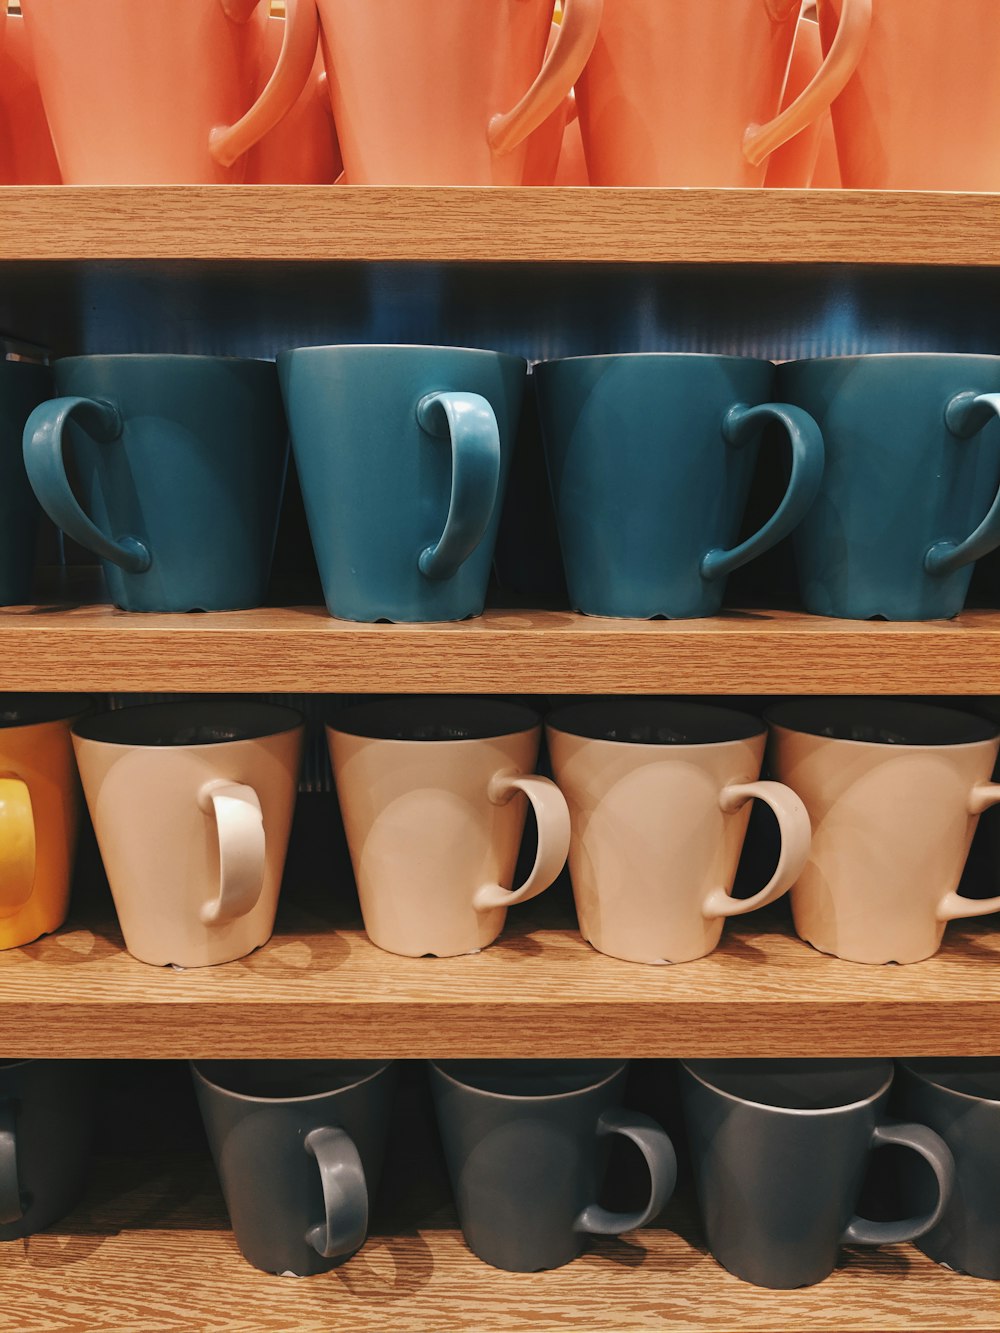 Lote de tazas de cerámica de colores variados en el estante